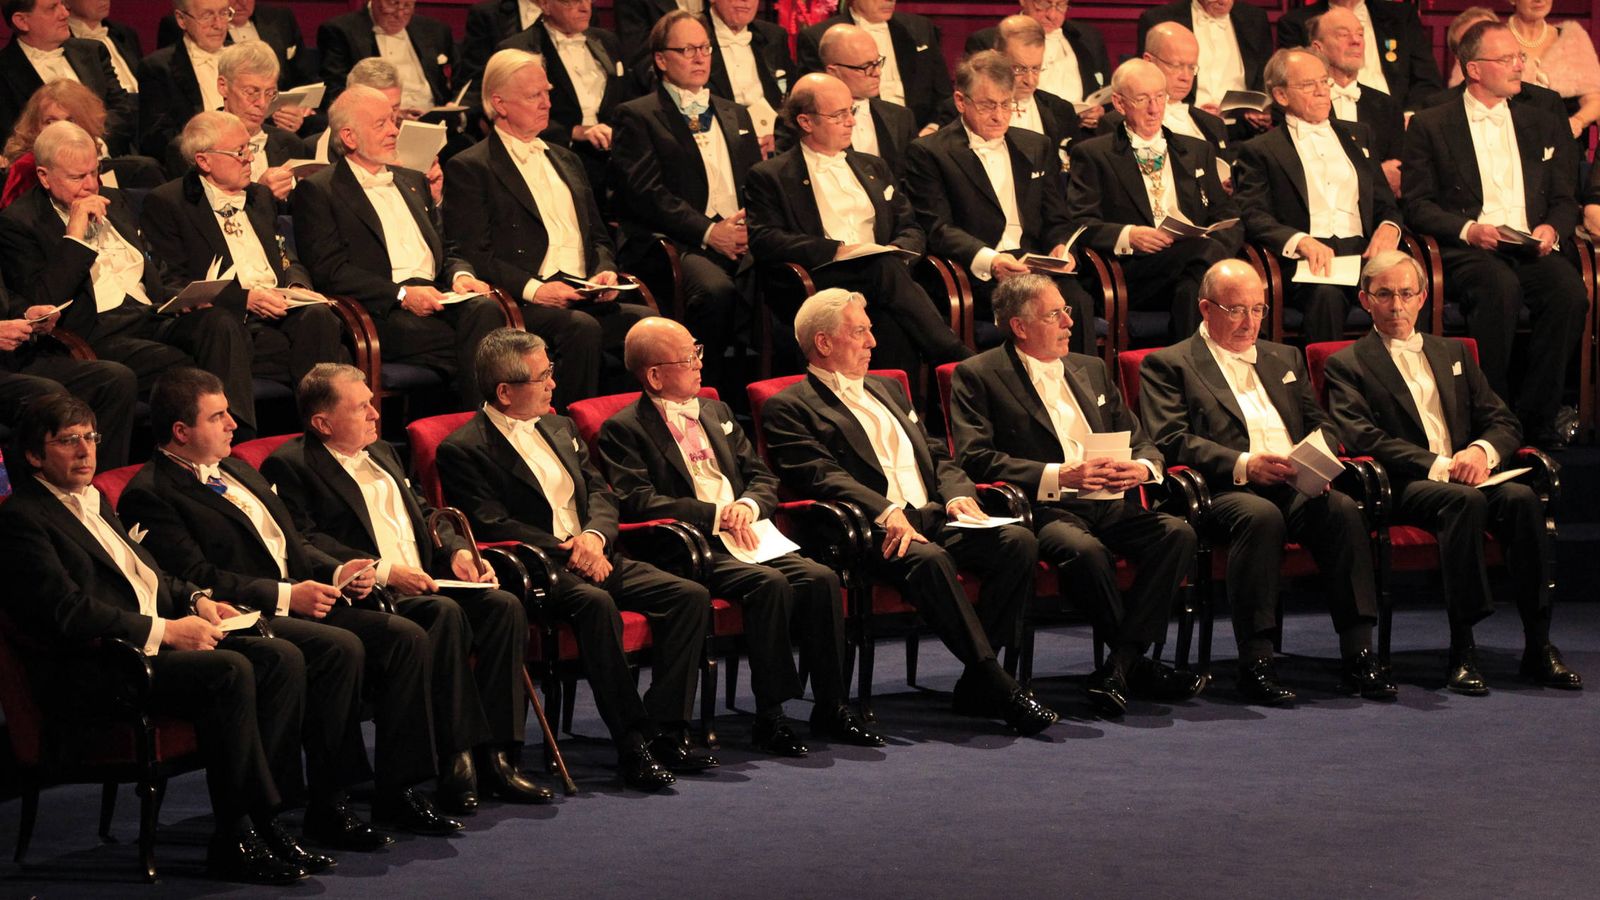 Foto: Reunión de ganadores del Premio Nobel de Literatura en 2010. (Reuters/P. K.)